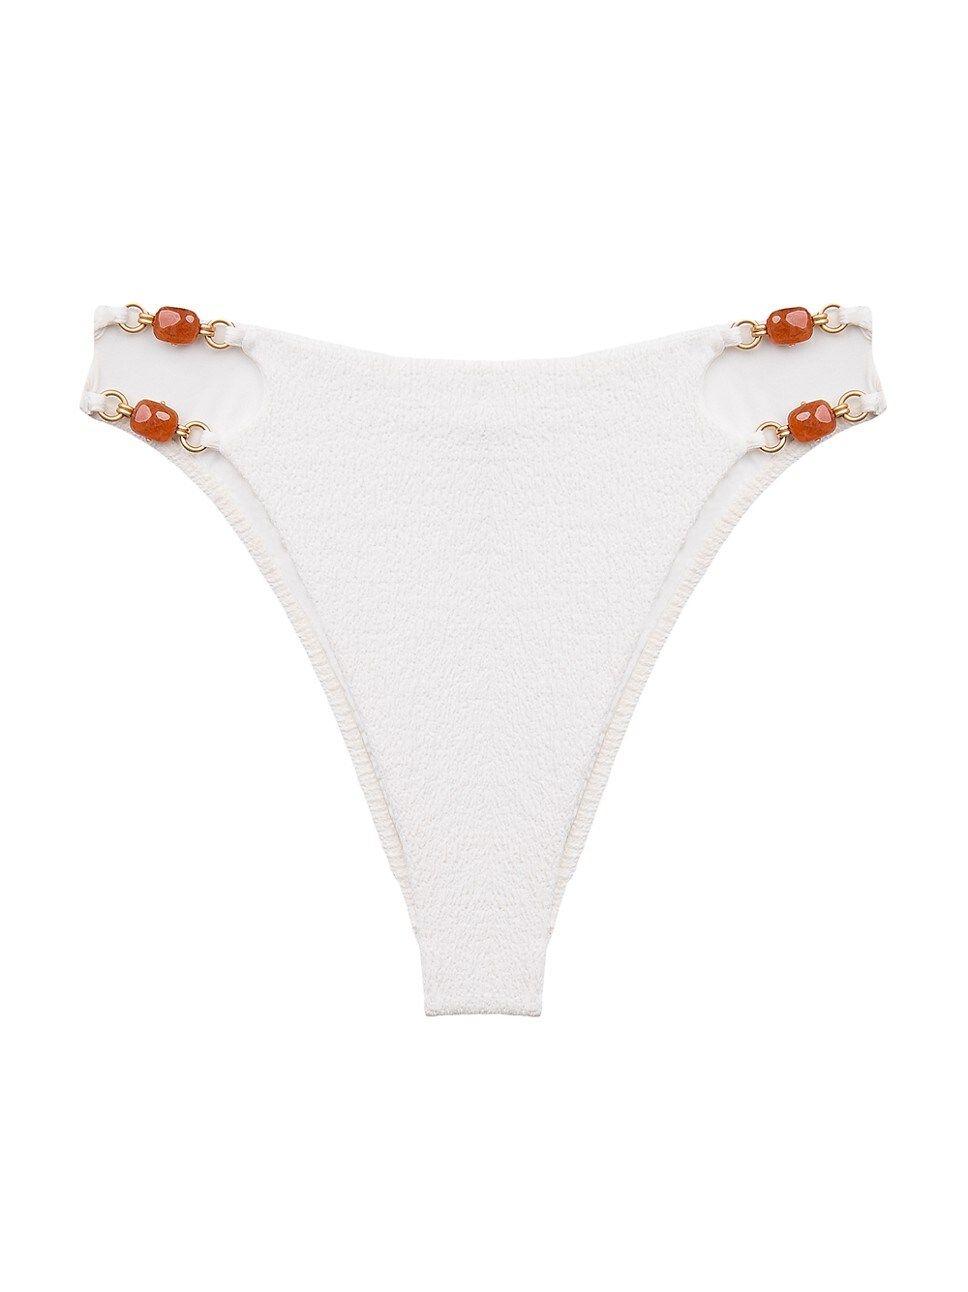 Firenze Martha High-Cut Bikini Bottom | Saks Fifth Avenue